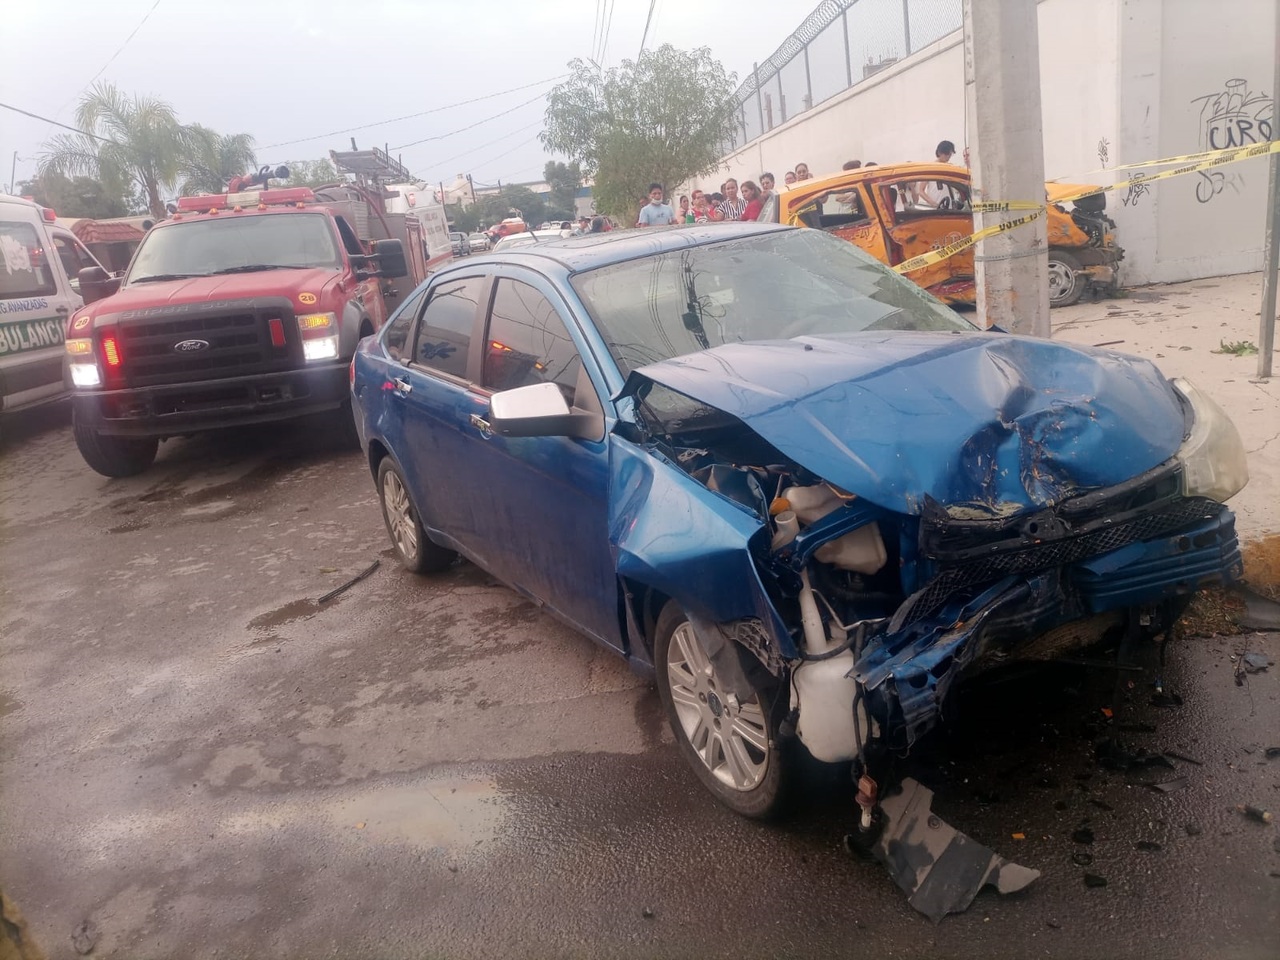 La conductora del Ford Focus color azul circulaba a exceso de velocidad y no realizó el alto correspondiente, impactando al taxi; del percance salió ilesa, por lo que se procedió a su detención.